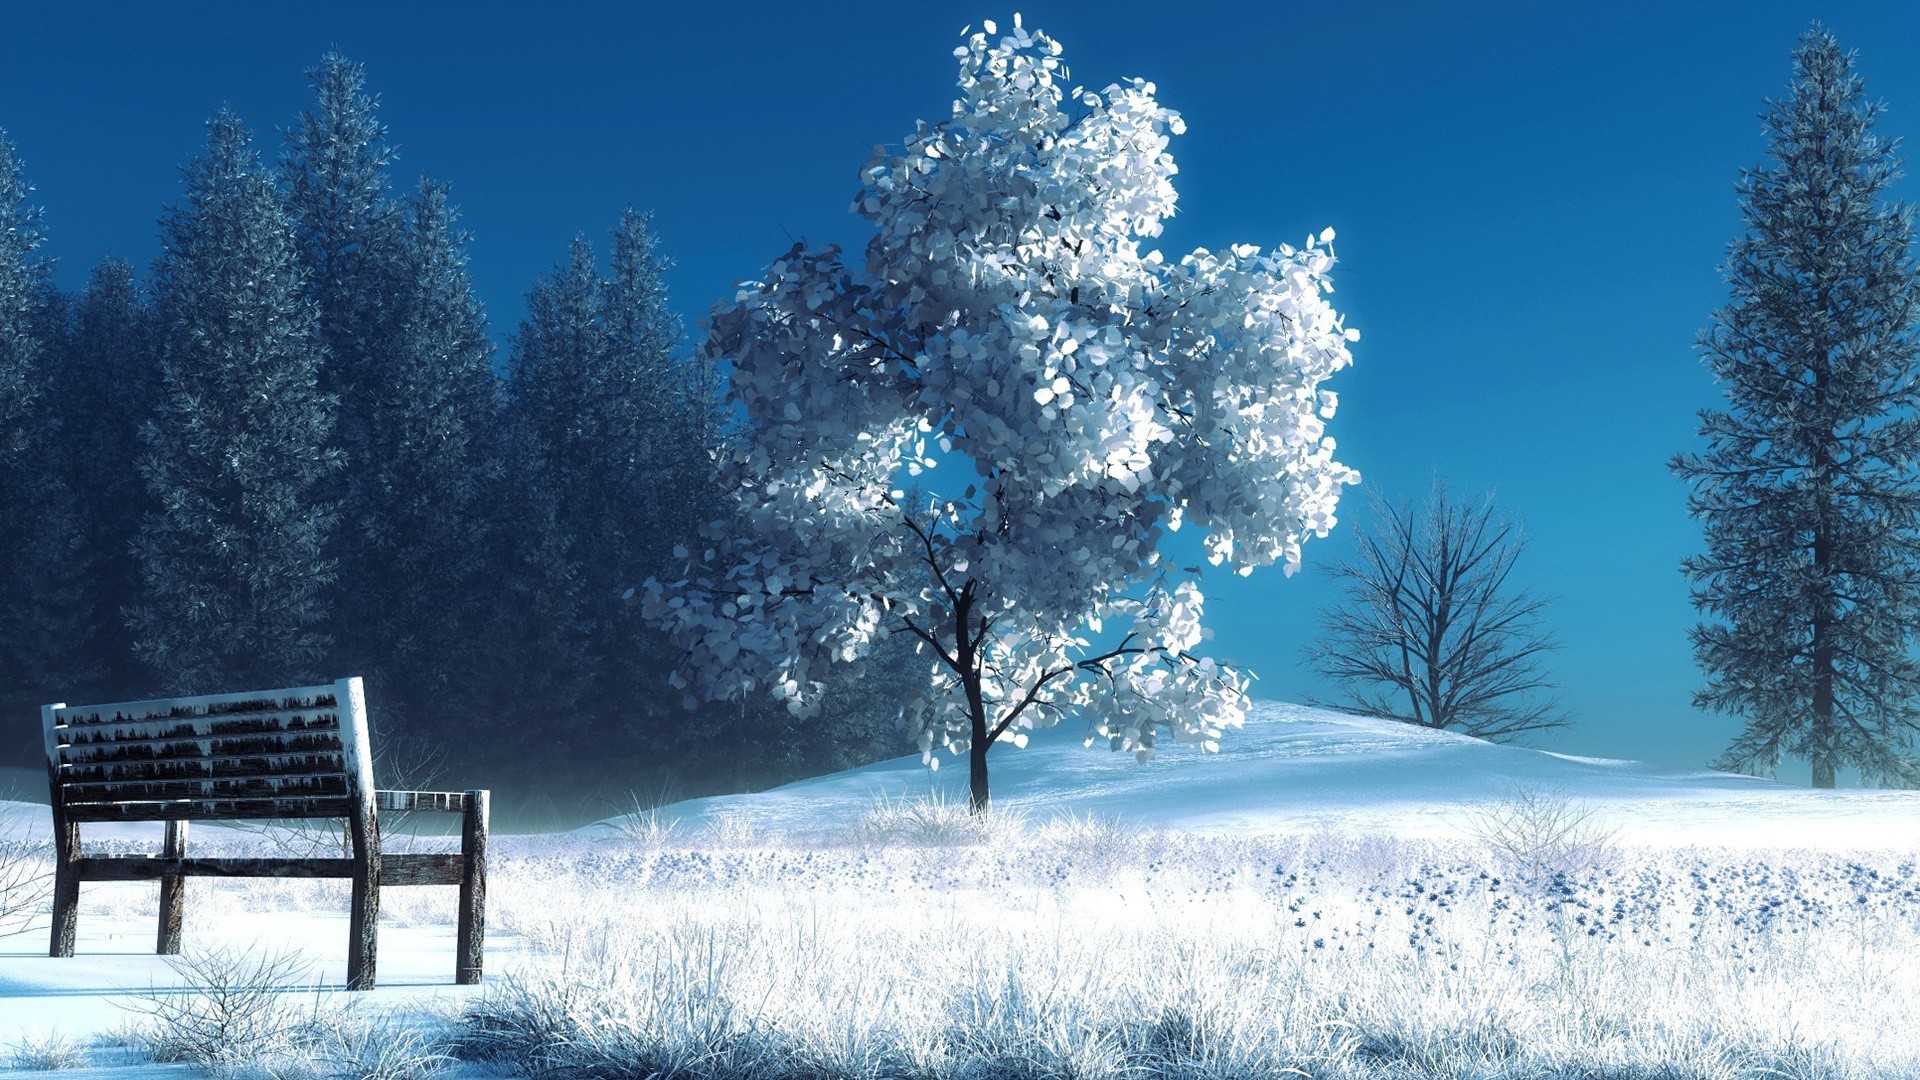 Скачать обои бесплатно Зима, Снег, Дерево, Скамейка, Художественные картинка на рабочий стол ПК